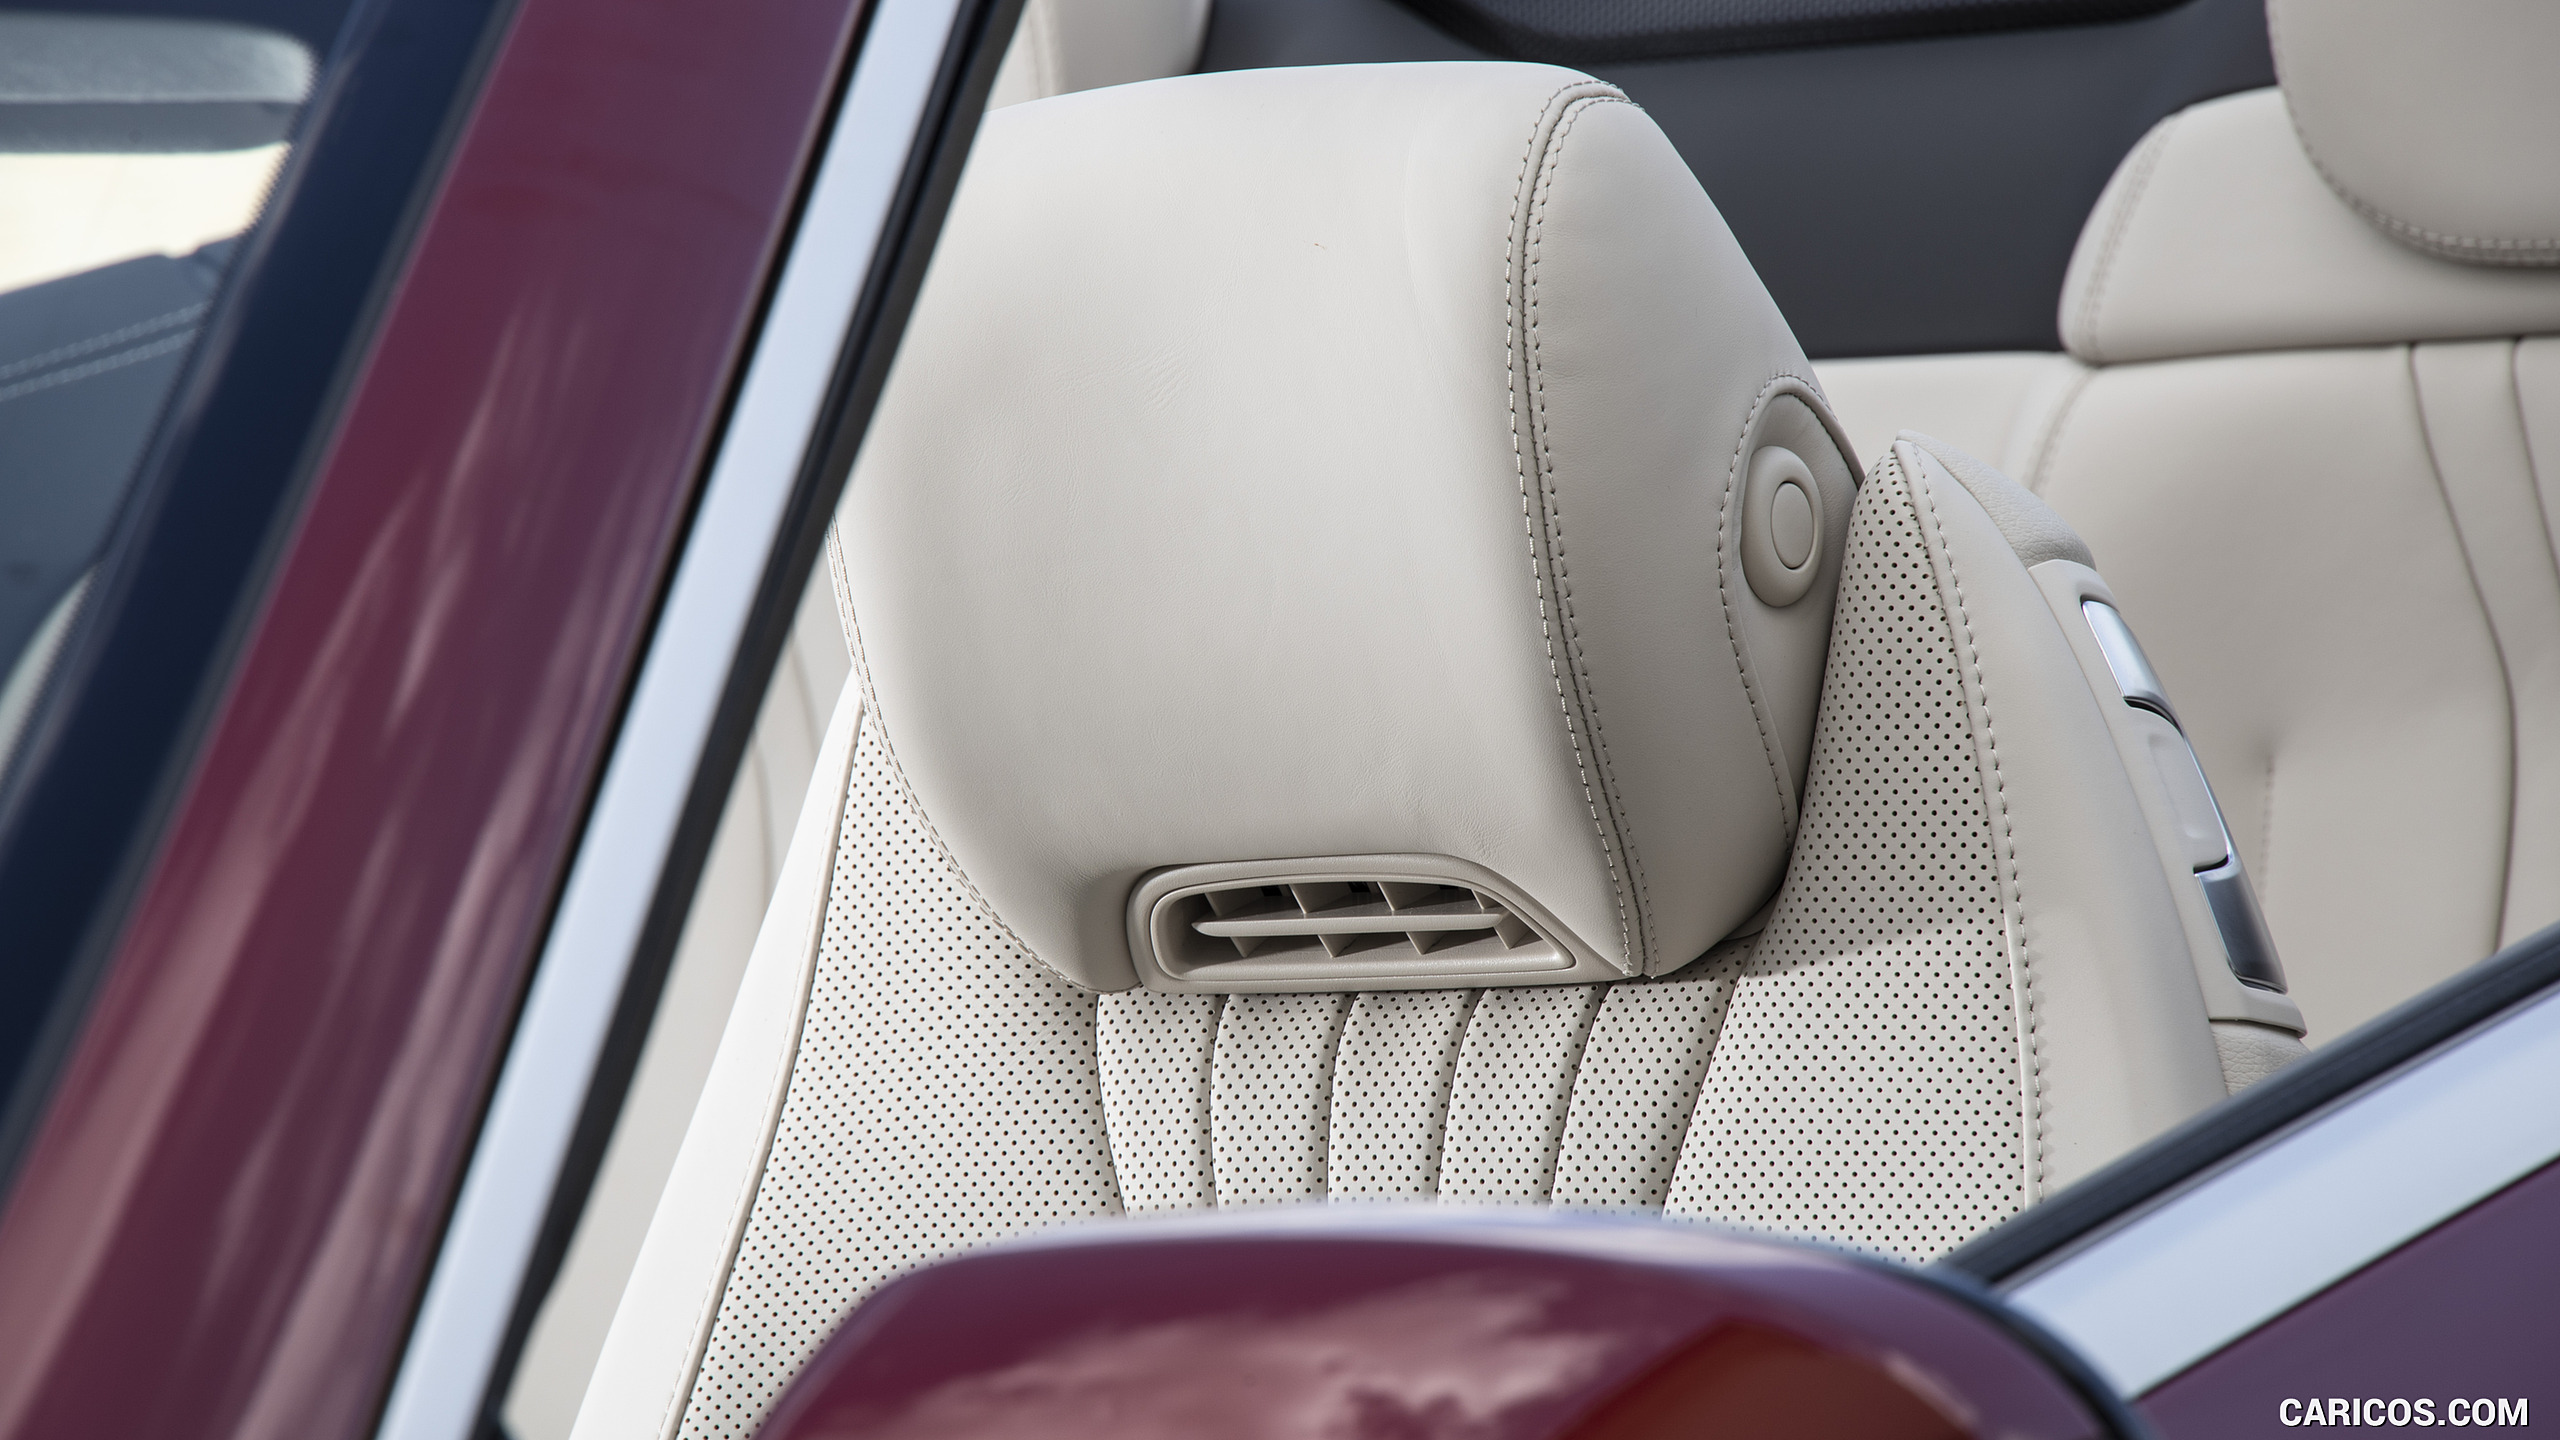 2021 Mercedes-Benz E 450 4MATIC Cabriolet - Interior, Seats, #55 of 55